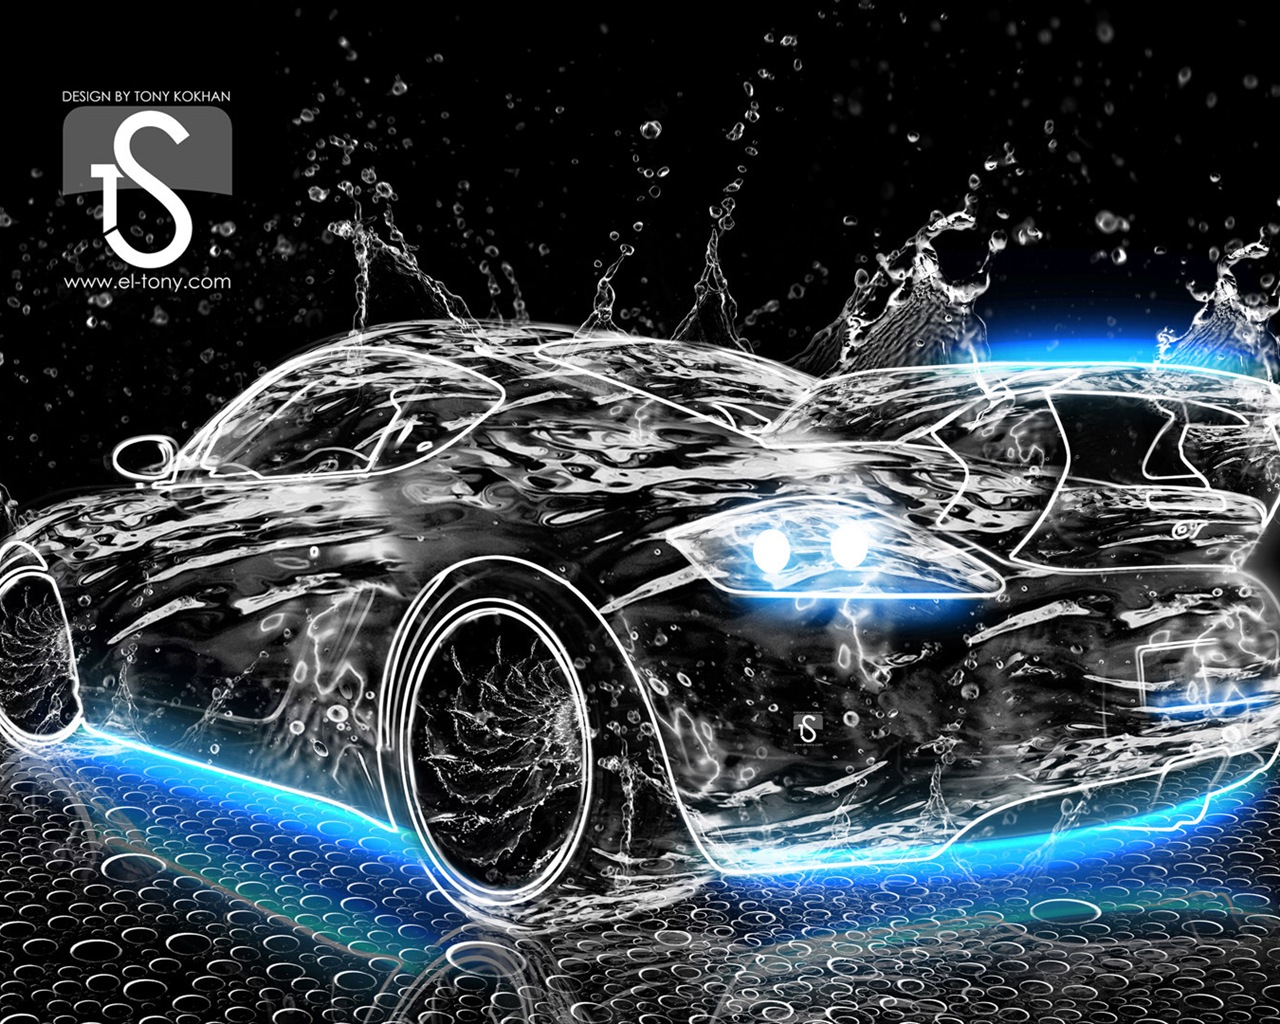 Les gouttes d'eau splash, beau fond d'écran de conception créative de voiture #3 - 1280x1024